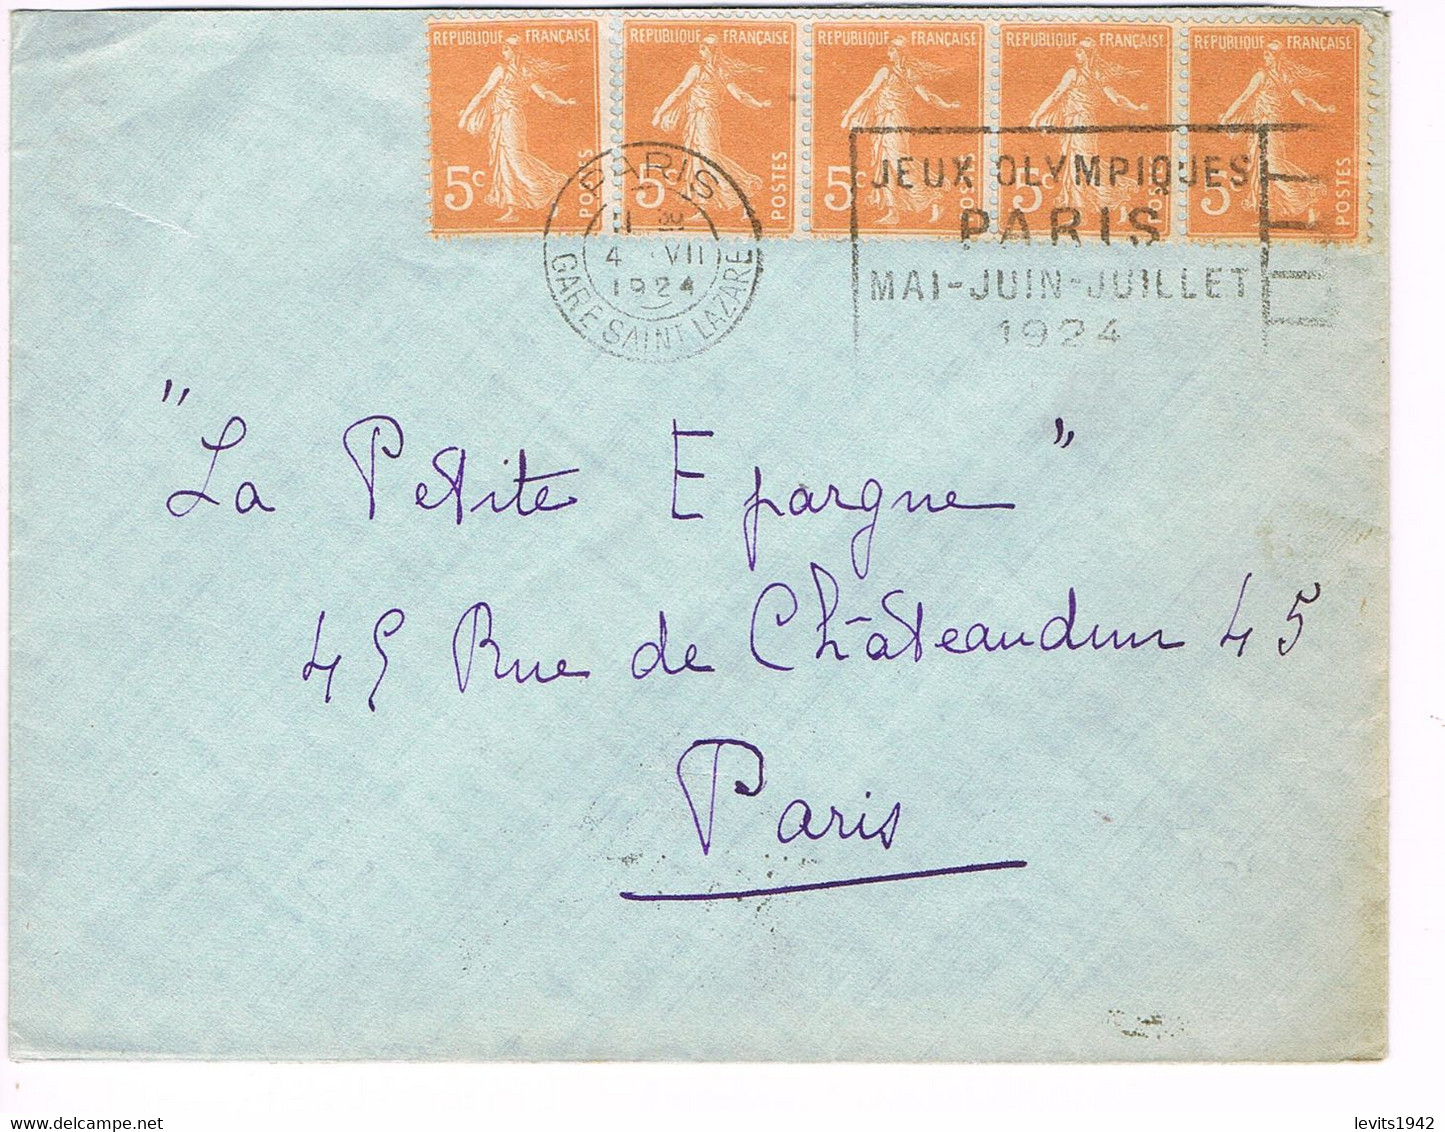 JEUX OLYMPIQUES 1924 -  MARQUE POSTALE - ESCRIME - POLO - JOUR DE COMPETITION - 04-07 - - Zomer 1924: Parijs